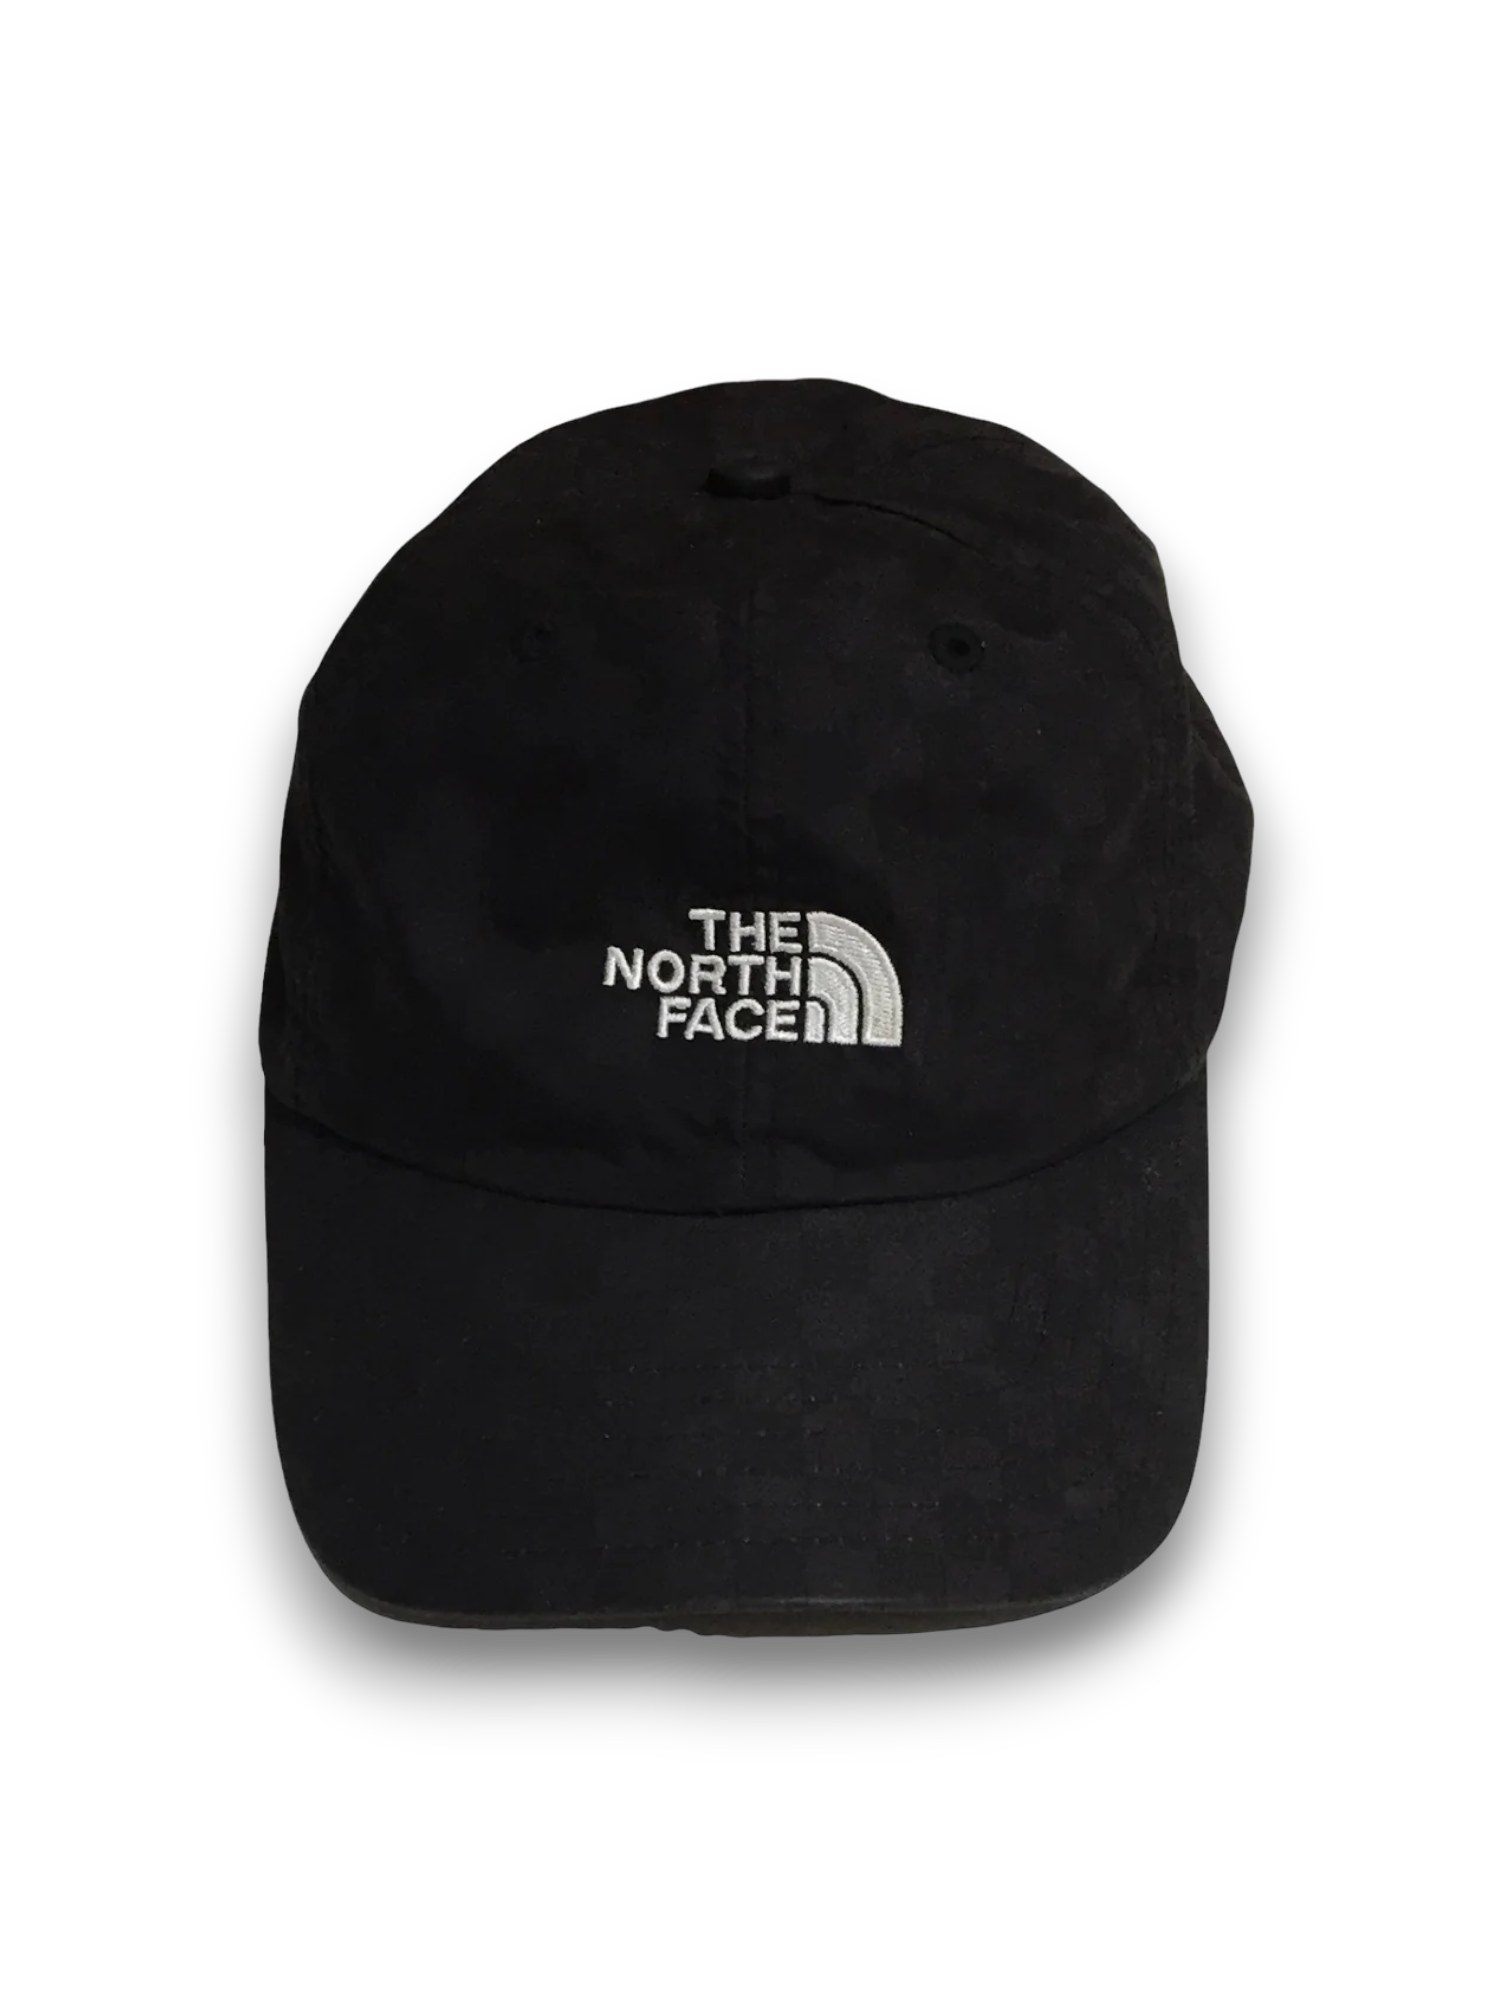 2011 Supreme x The North Face Checkered Black Cap